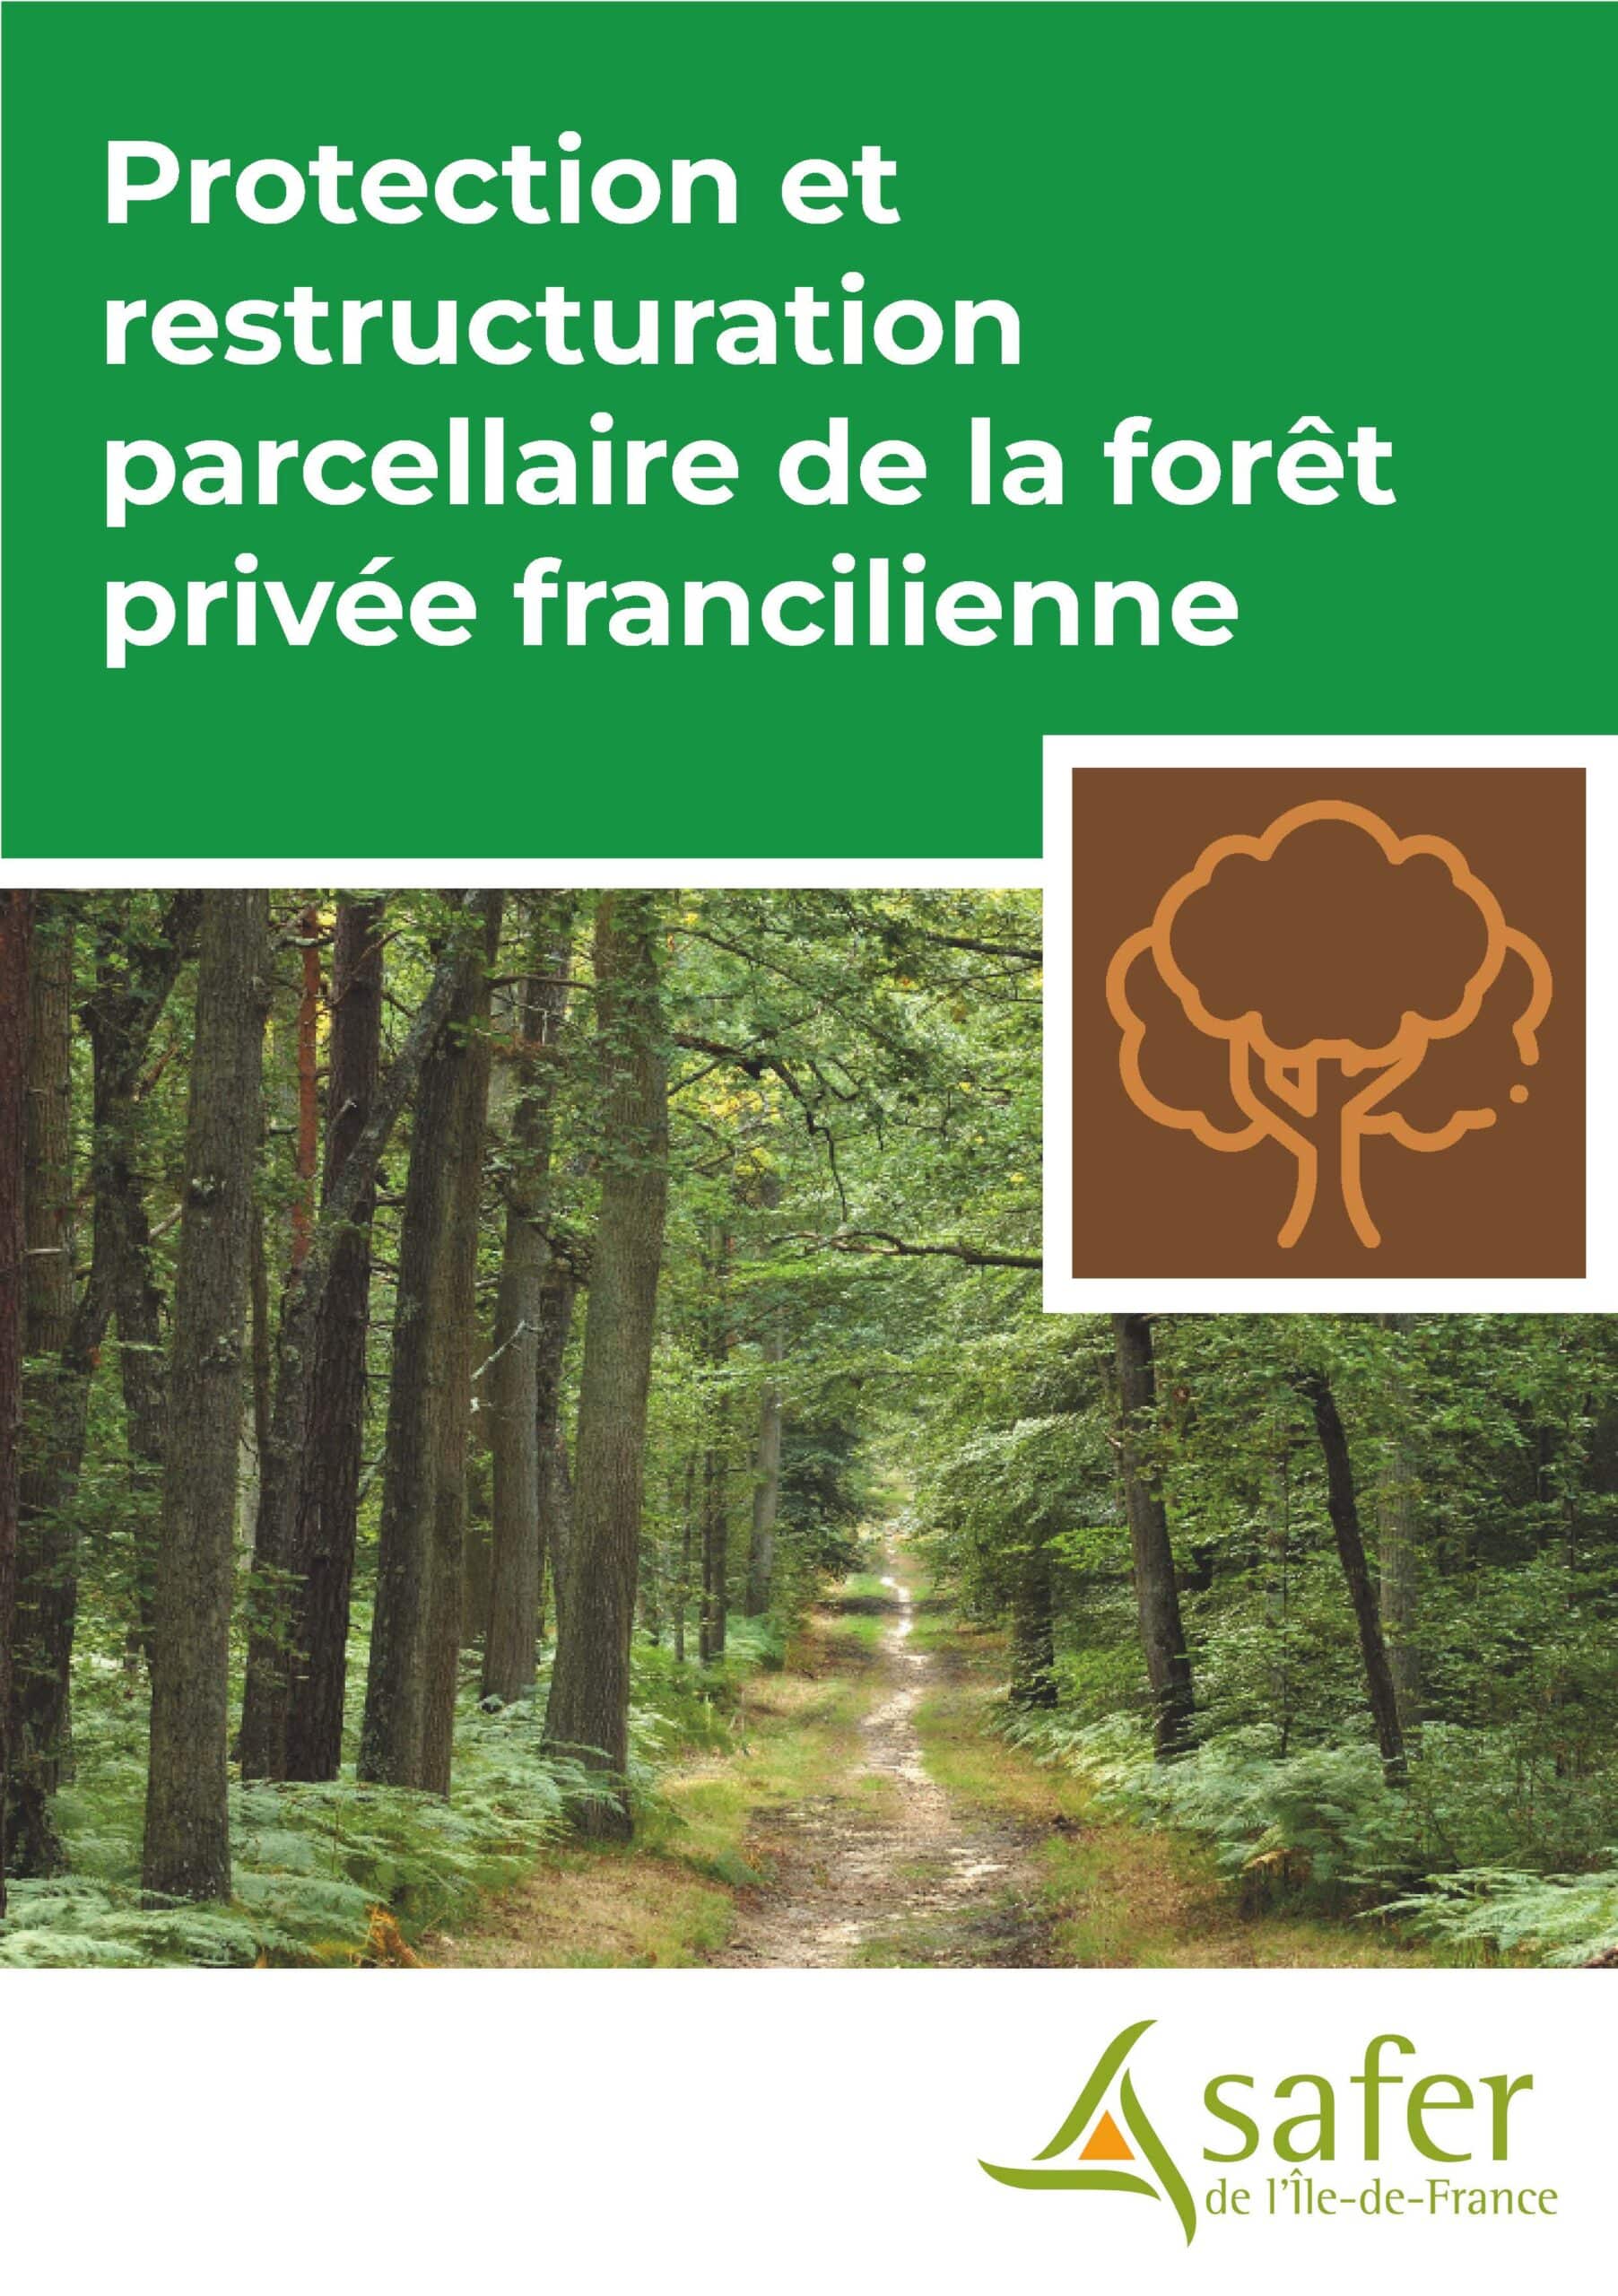 Plaquette protection et restructuration parcellaire de la forêt privée francilienne